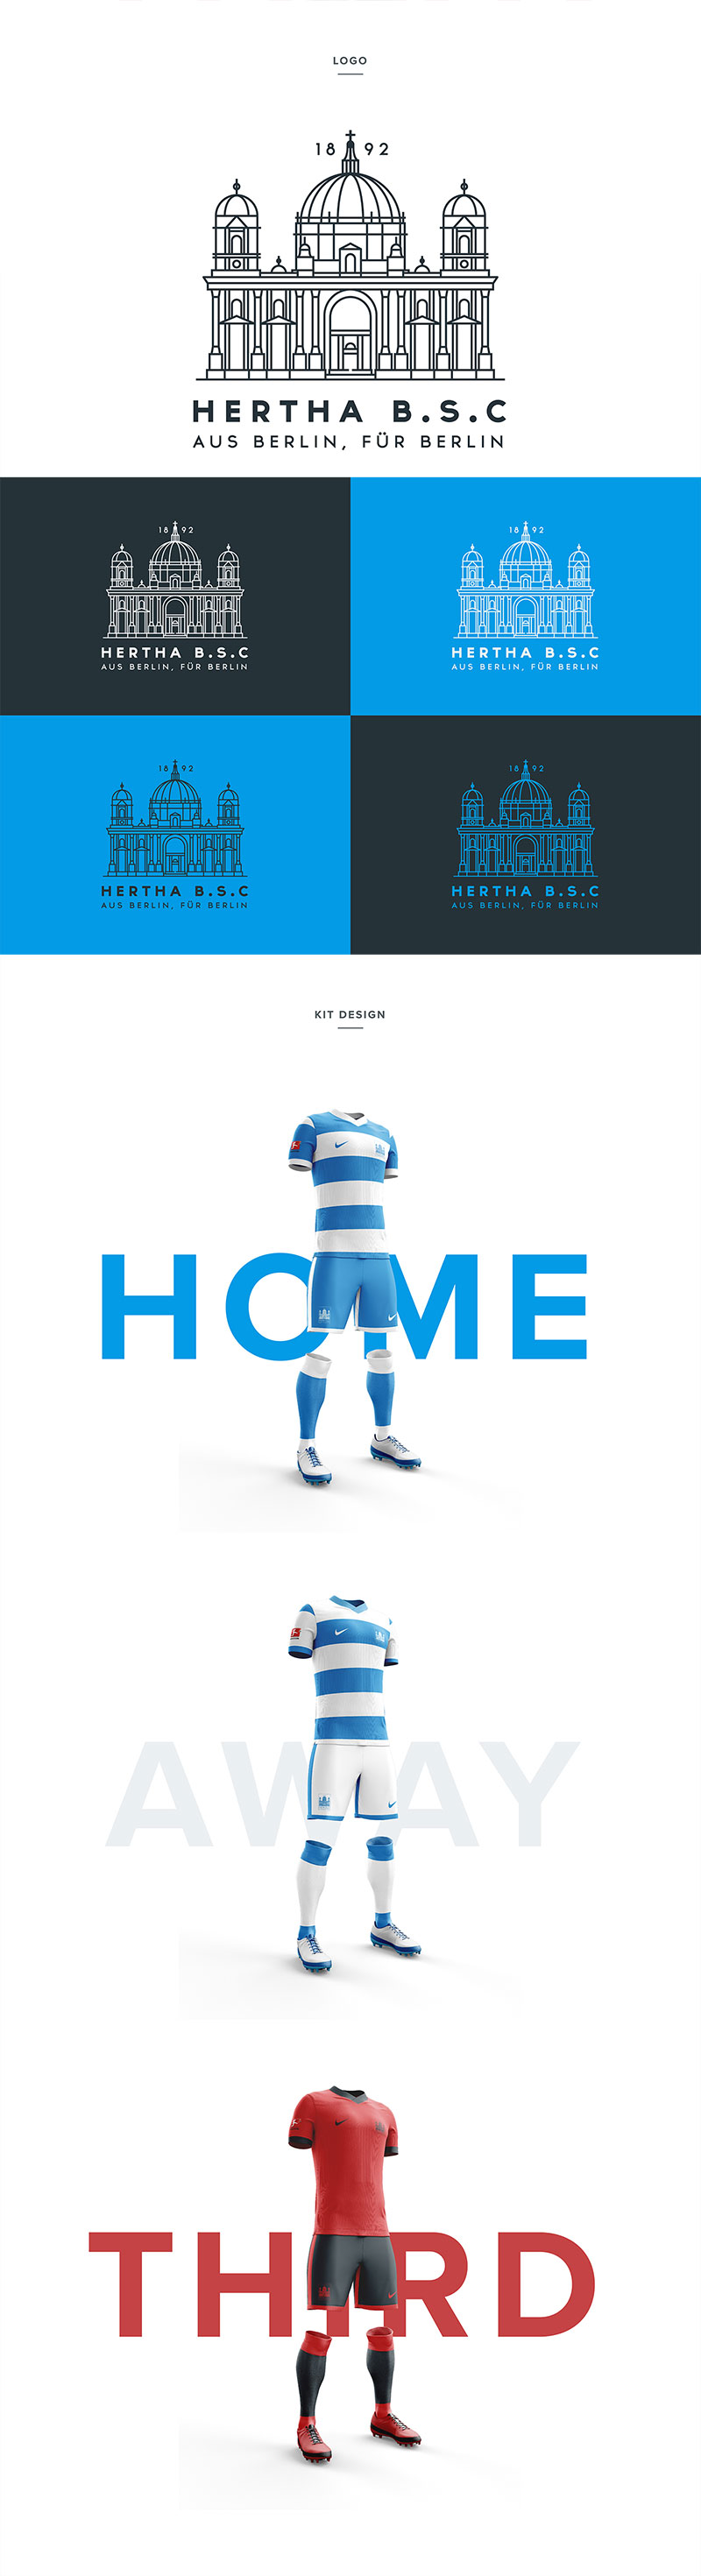 50个足球俱乐部品牌视觉形象设计